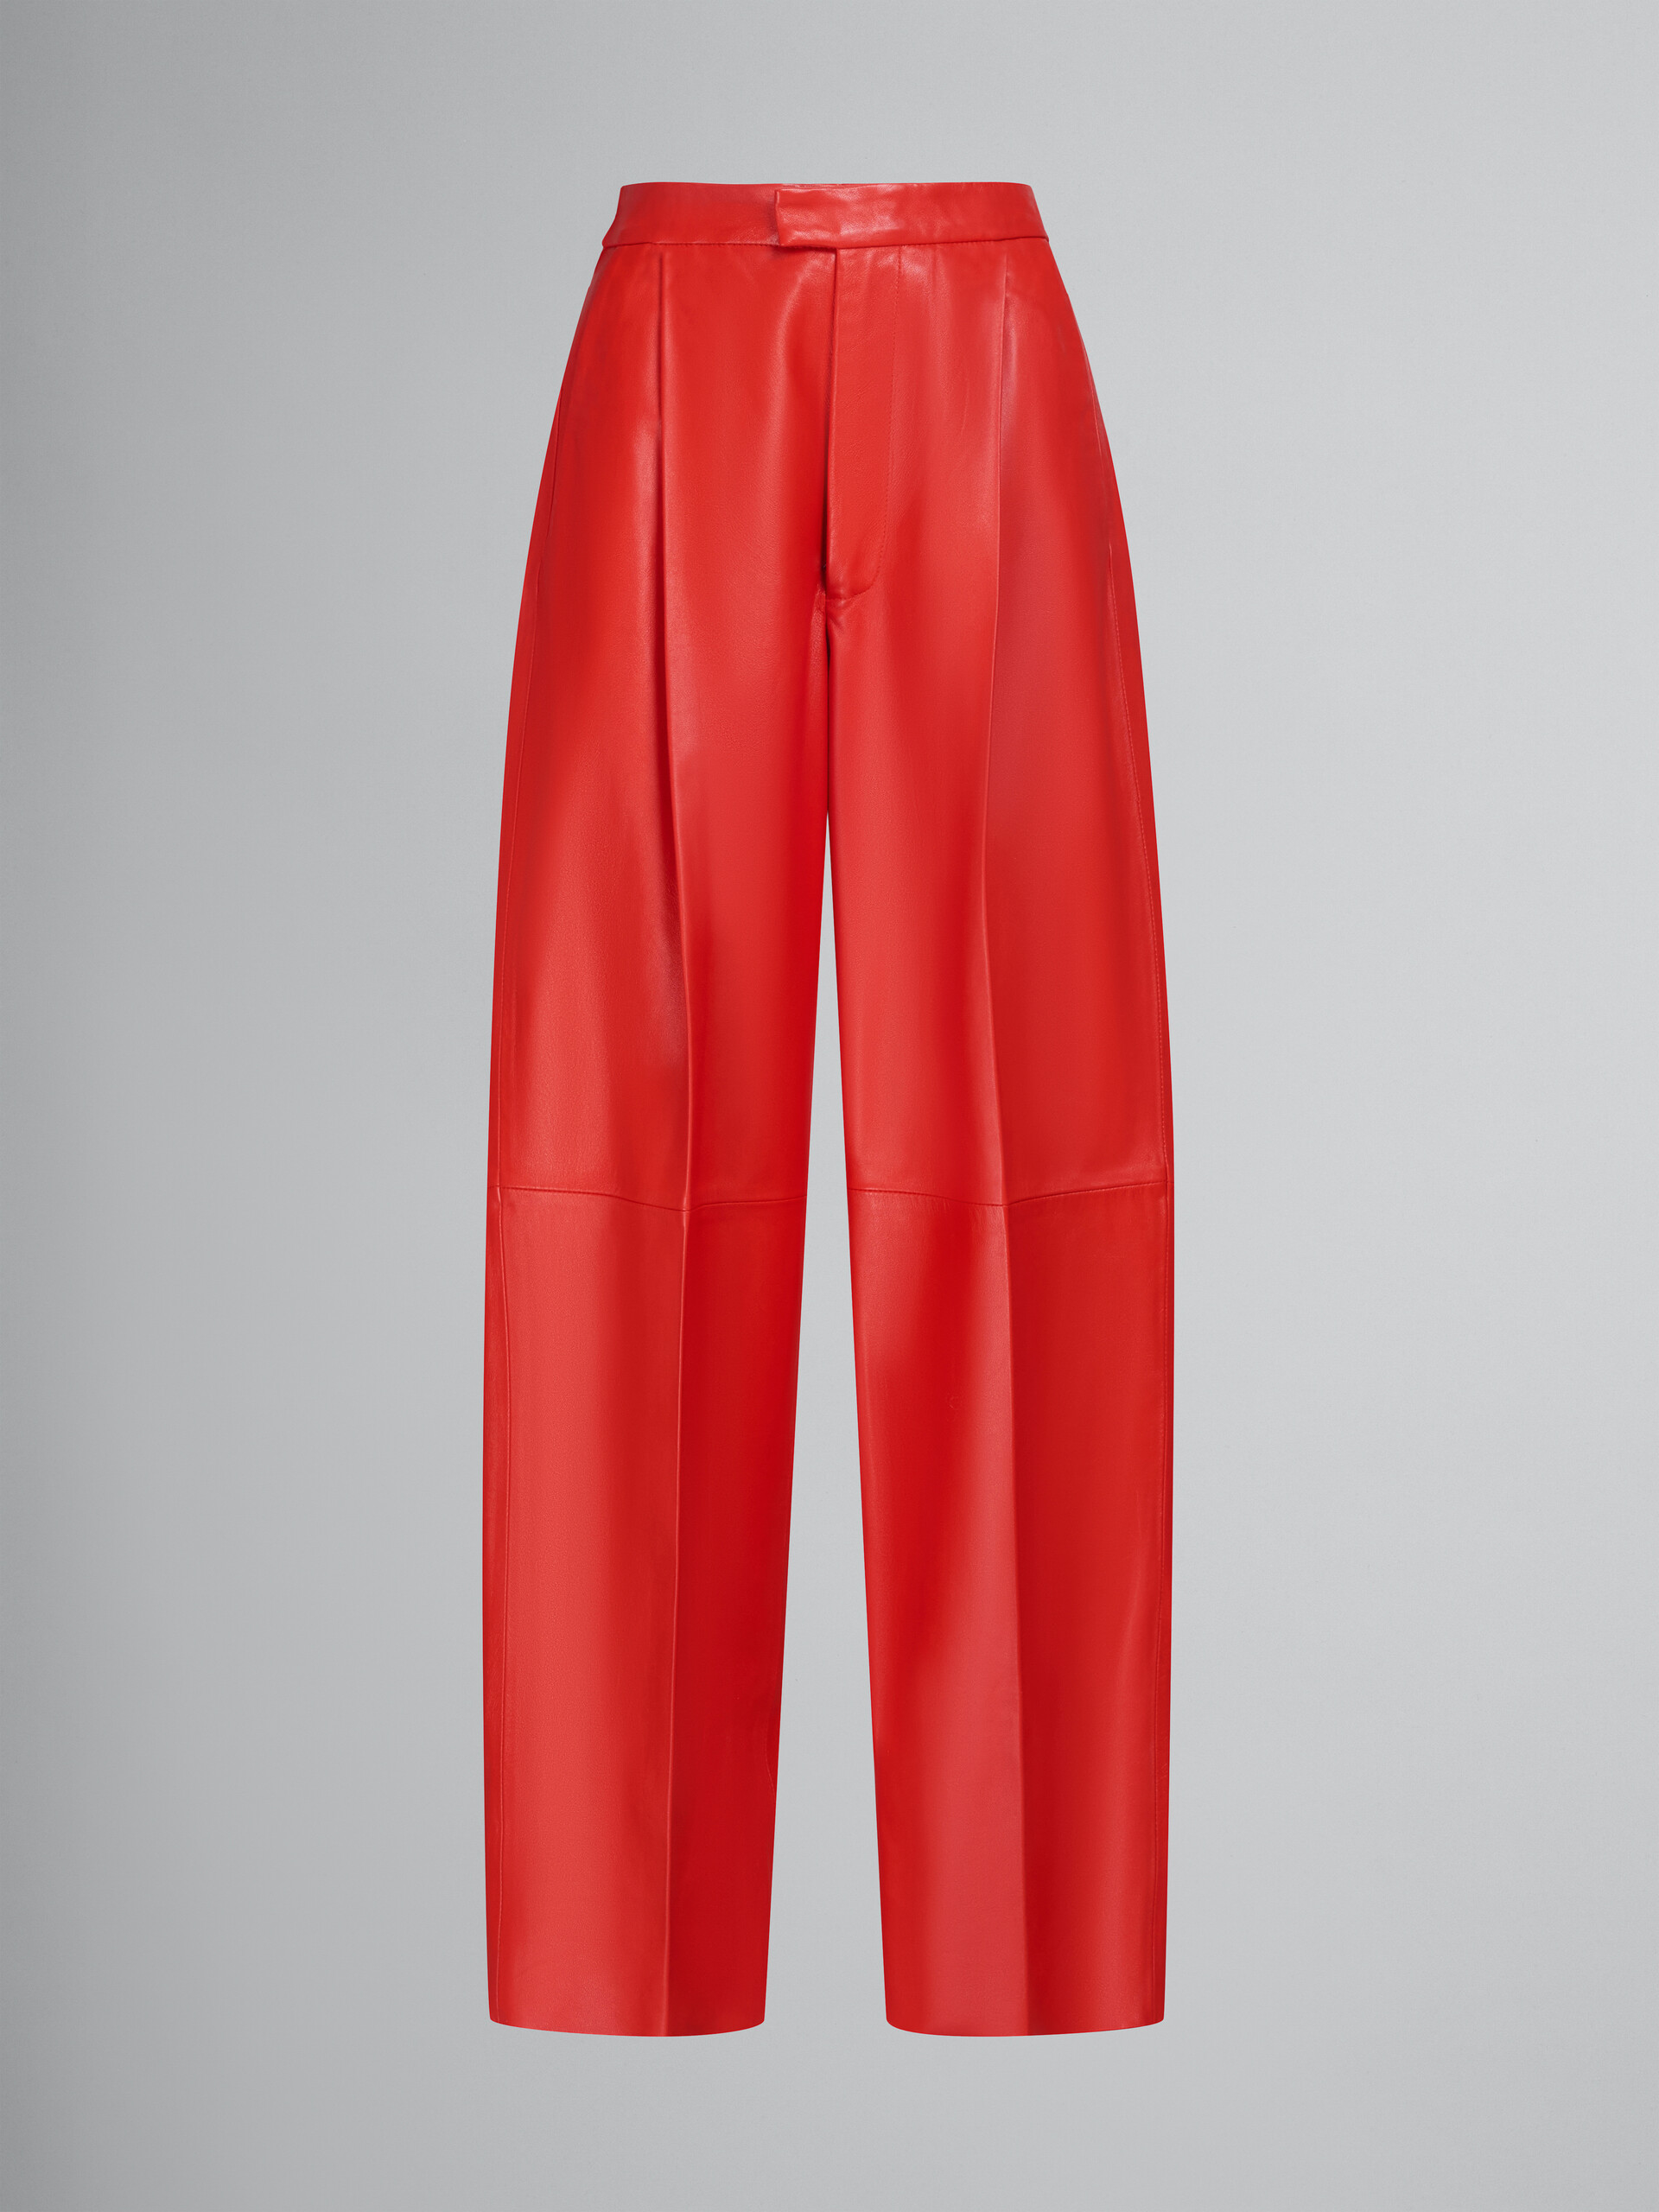 Pantalon ajusté en cuir nappa rouge - Pantalons - Image 1